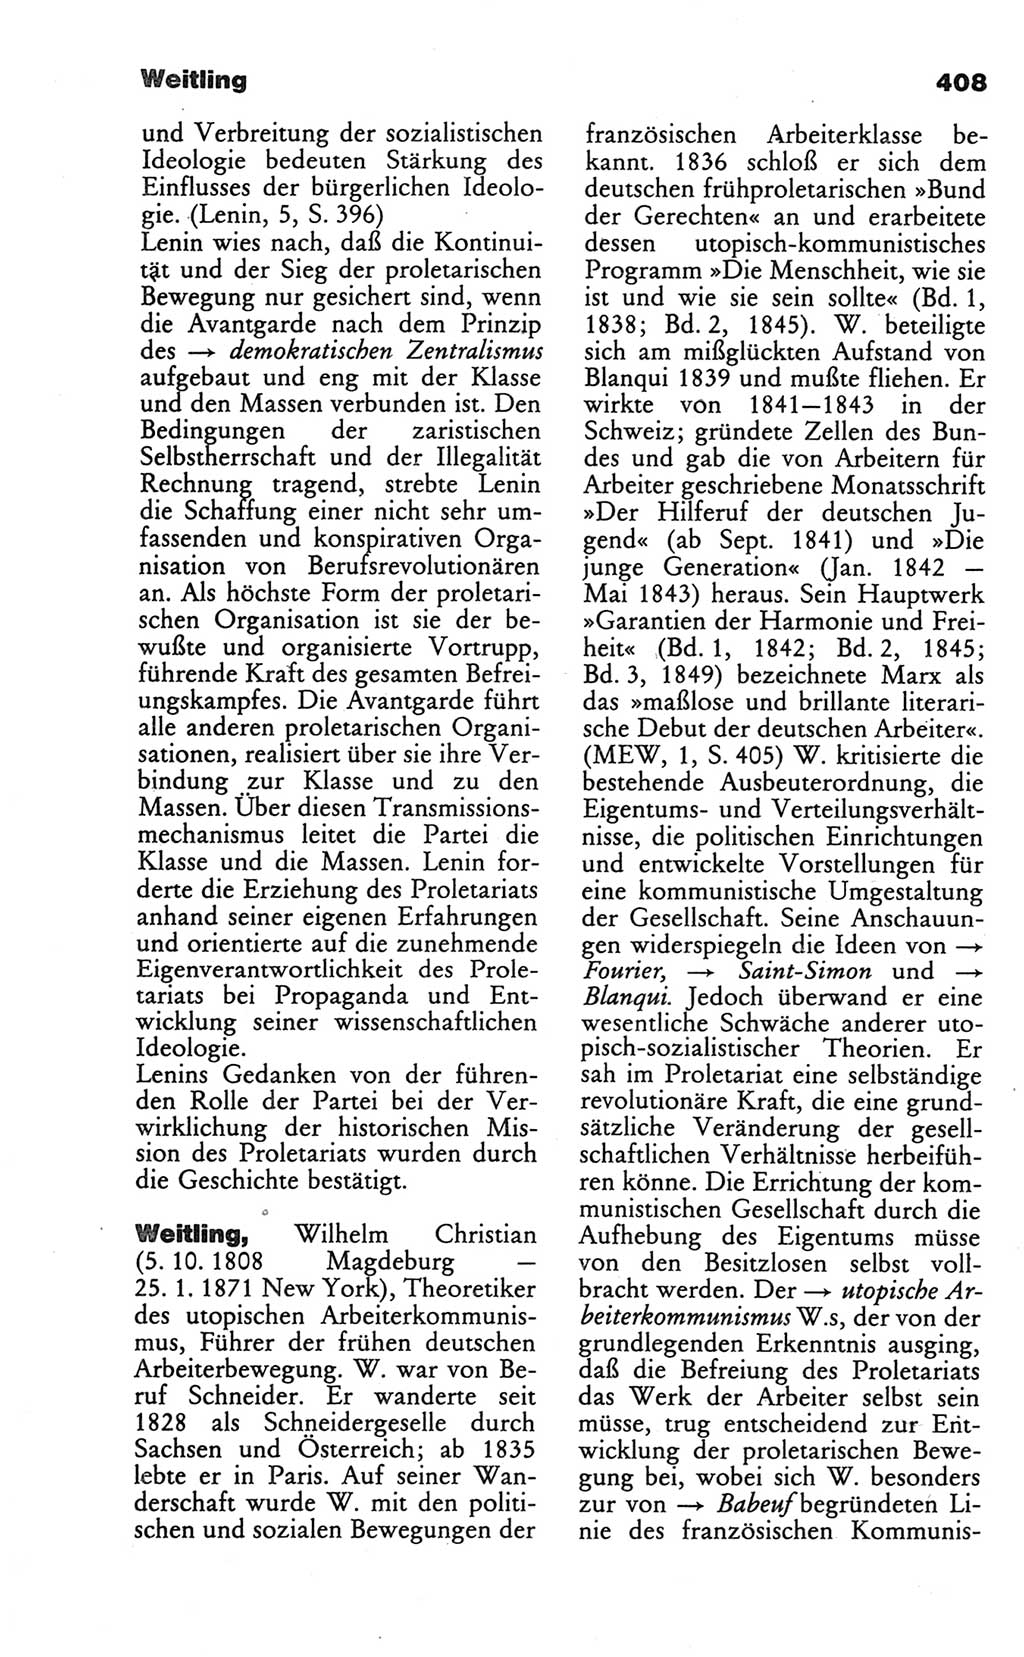 Wörterbuch des wissenschaftlichen Kommunismus [Deutsche Demokratische Republik (DDR)] 1986, Seite 408 (Wb. wiss. Komm. DDR 1986, S. 408)